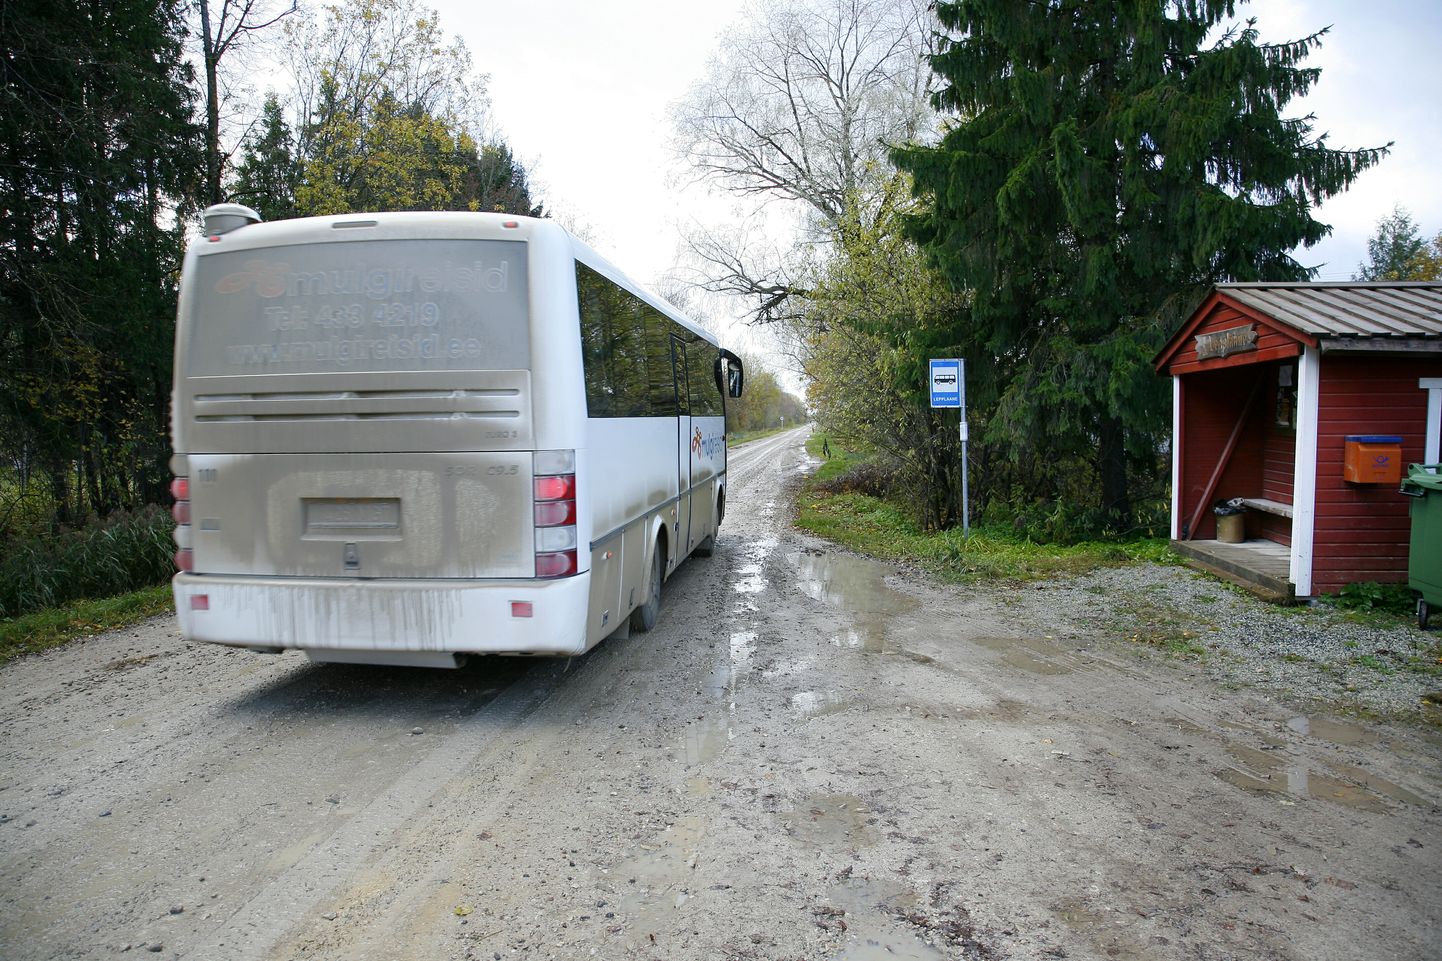 Pärnumaa ühistranspordikeskus (PÜTK) on välja kuulutanud riigihanke, leidmaks bussifirmad, kes hakkaksid teenindama Pärnu maakonda. Foto on illustreeriv.